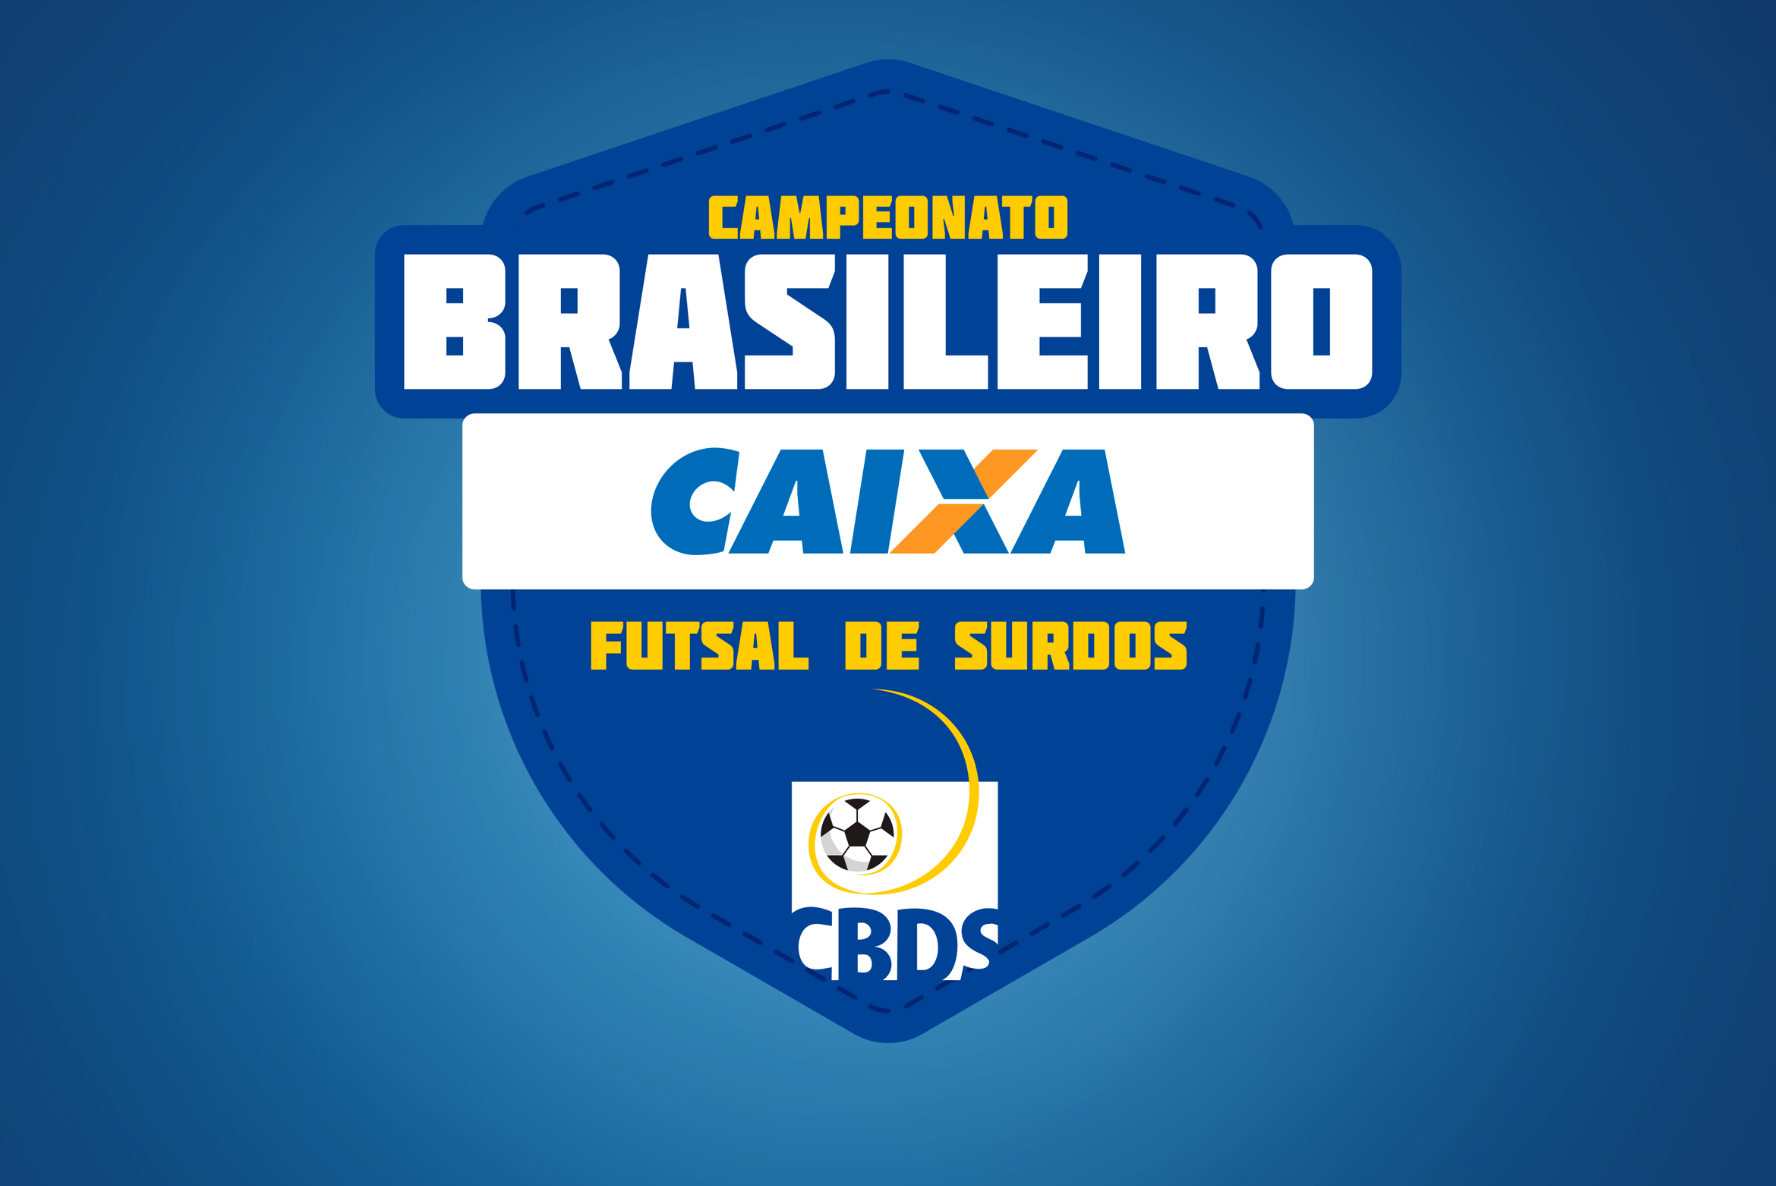 CBDS realiza Campeonato Brasileiro Caixa de Futsal de Surdos em São Paulo